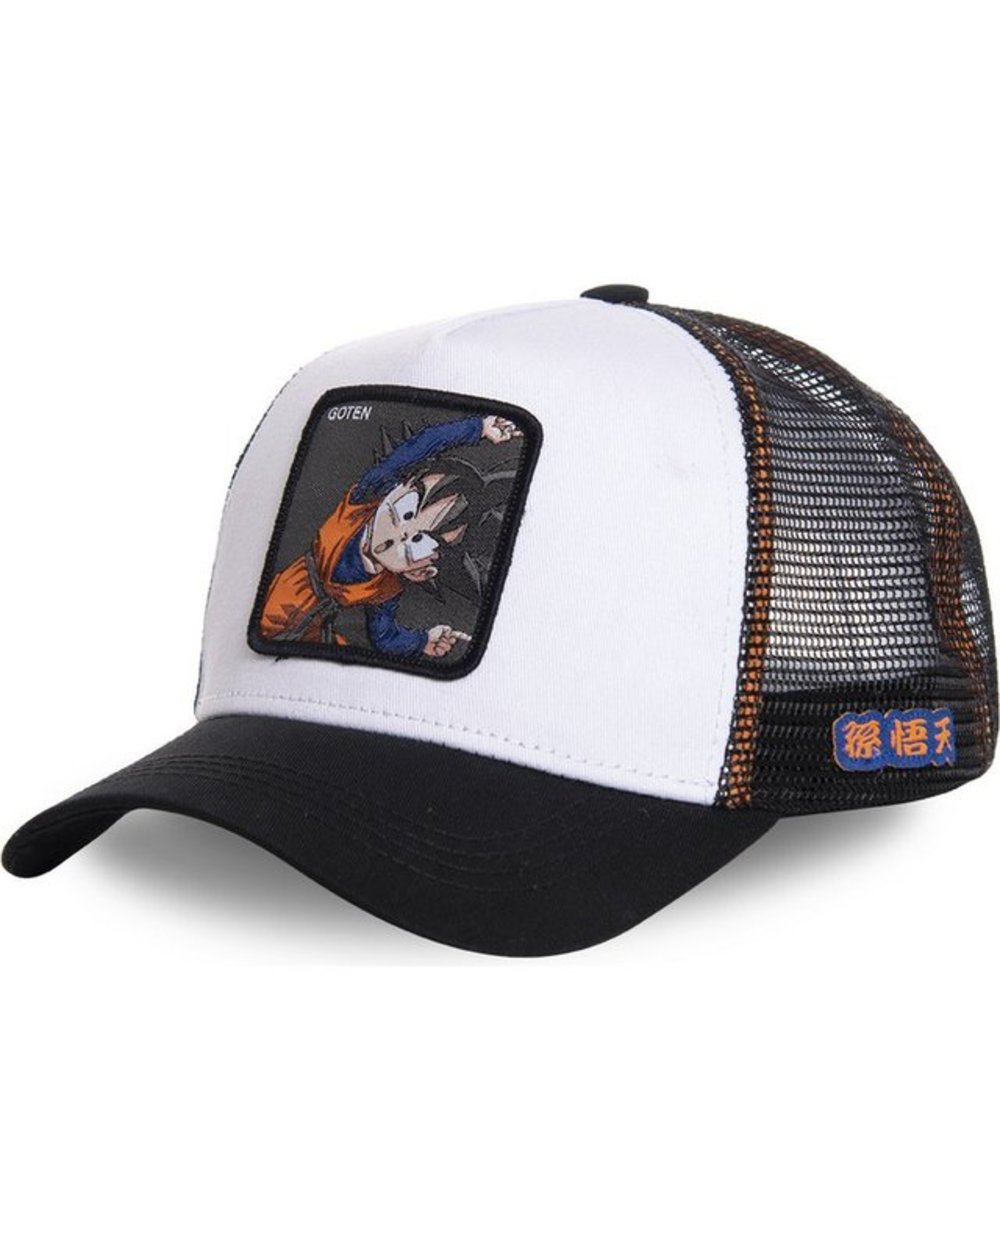 Best Shop Goten Dragon Ball Trucker Outdoors Hat